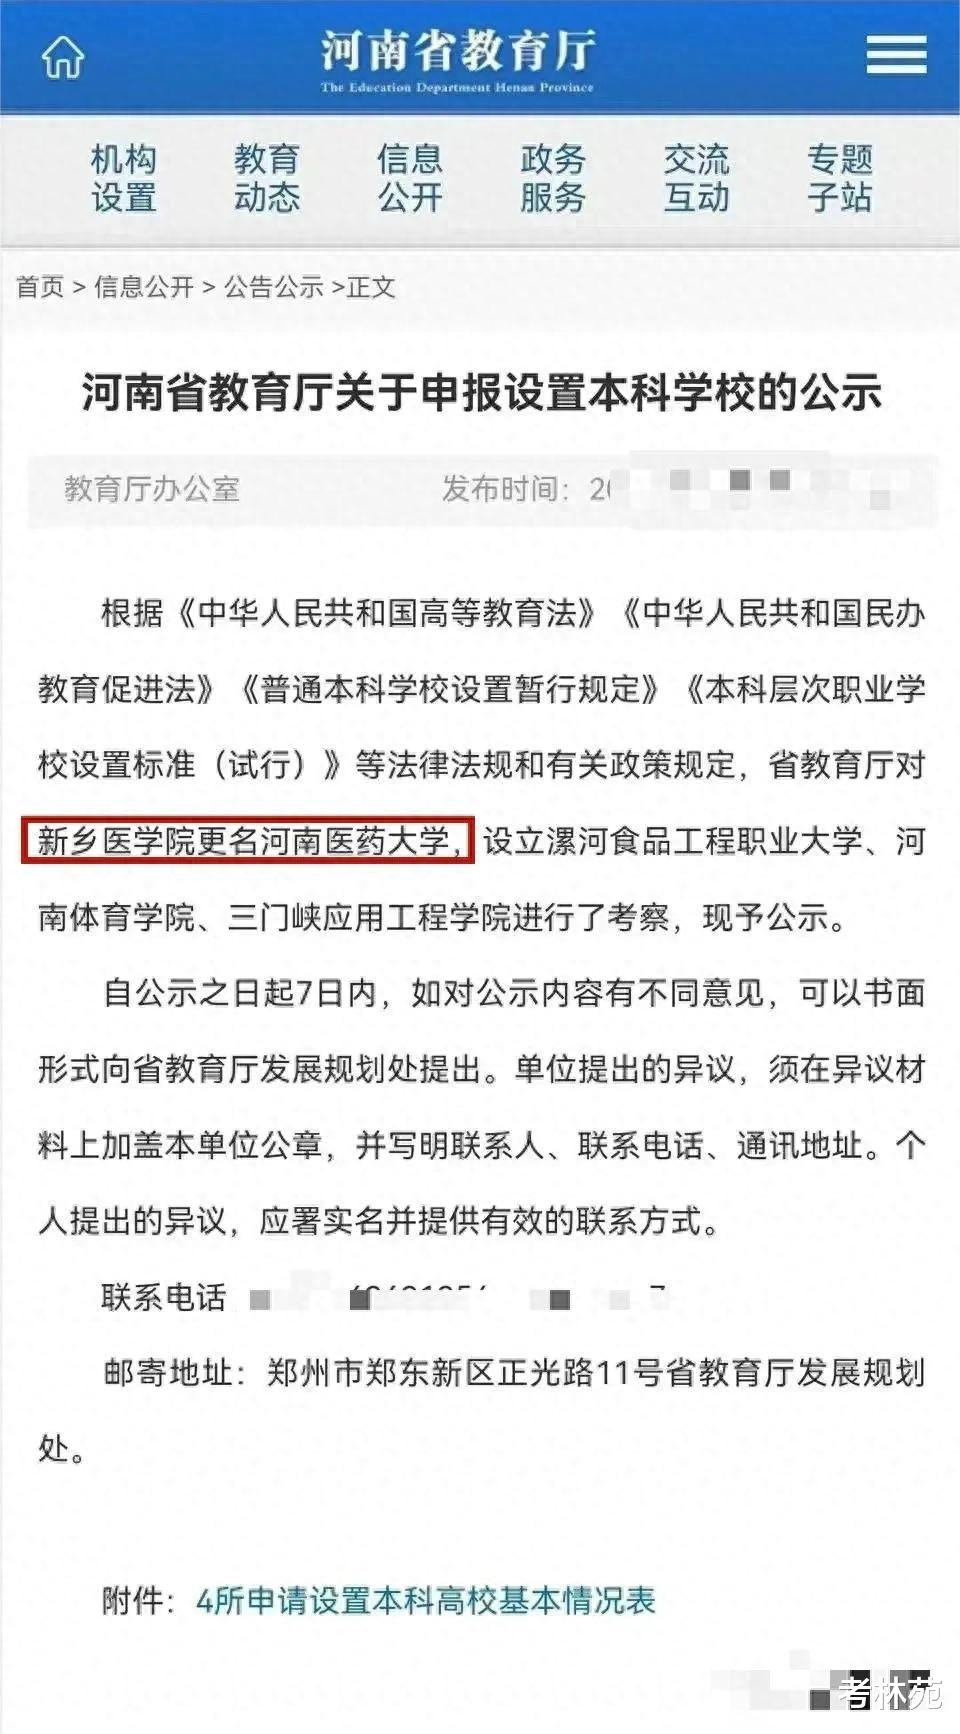 新乡医学院更名“河南医药大学”被驳回, 新校名是什么? 网友热议